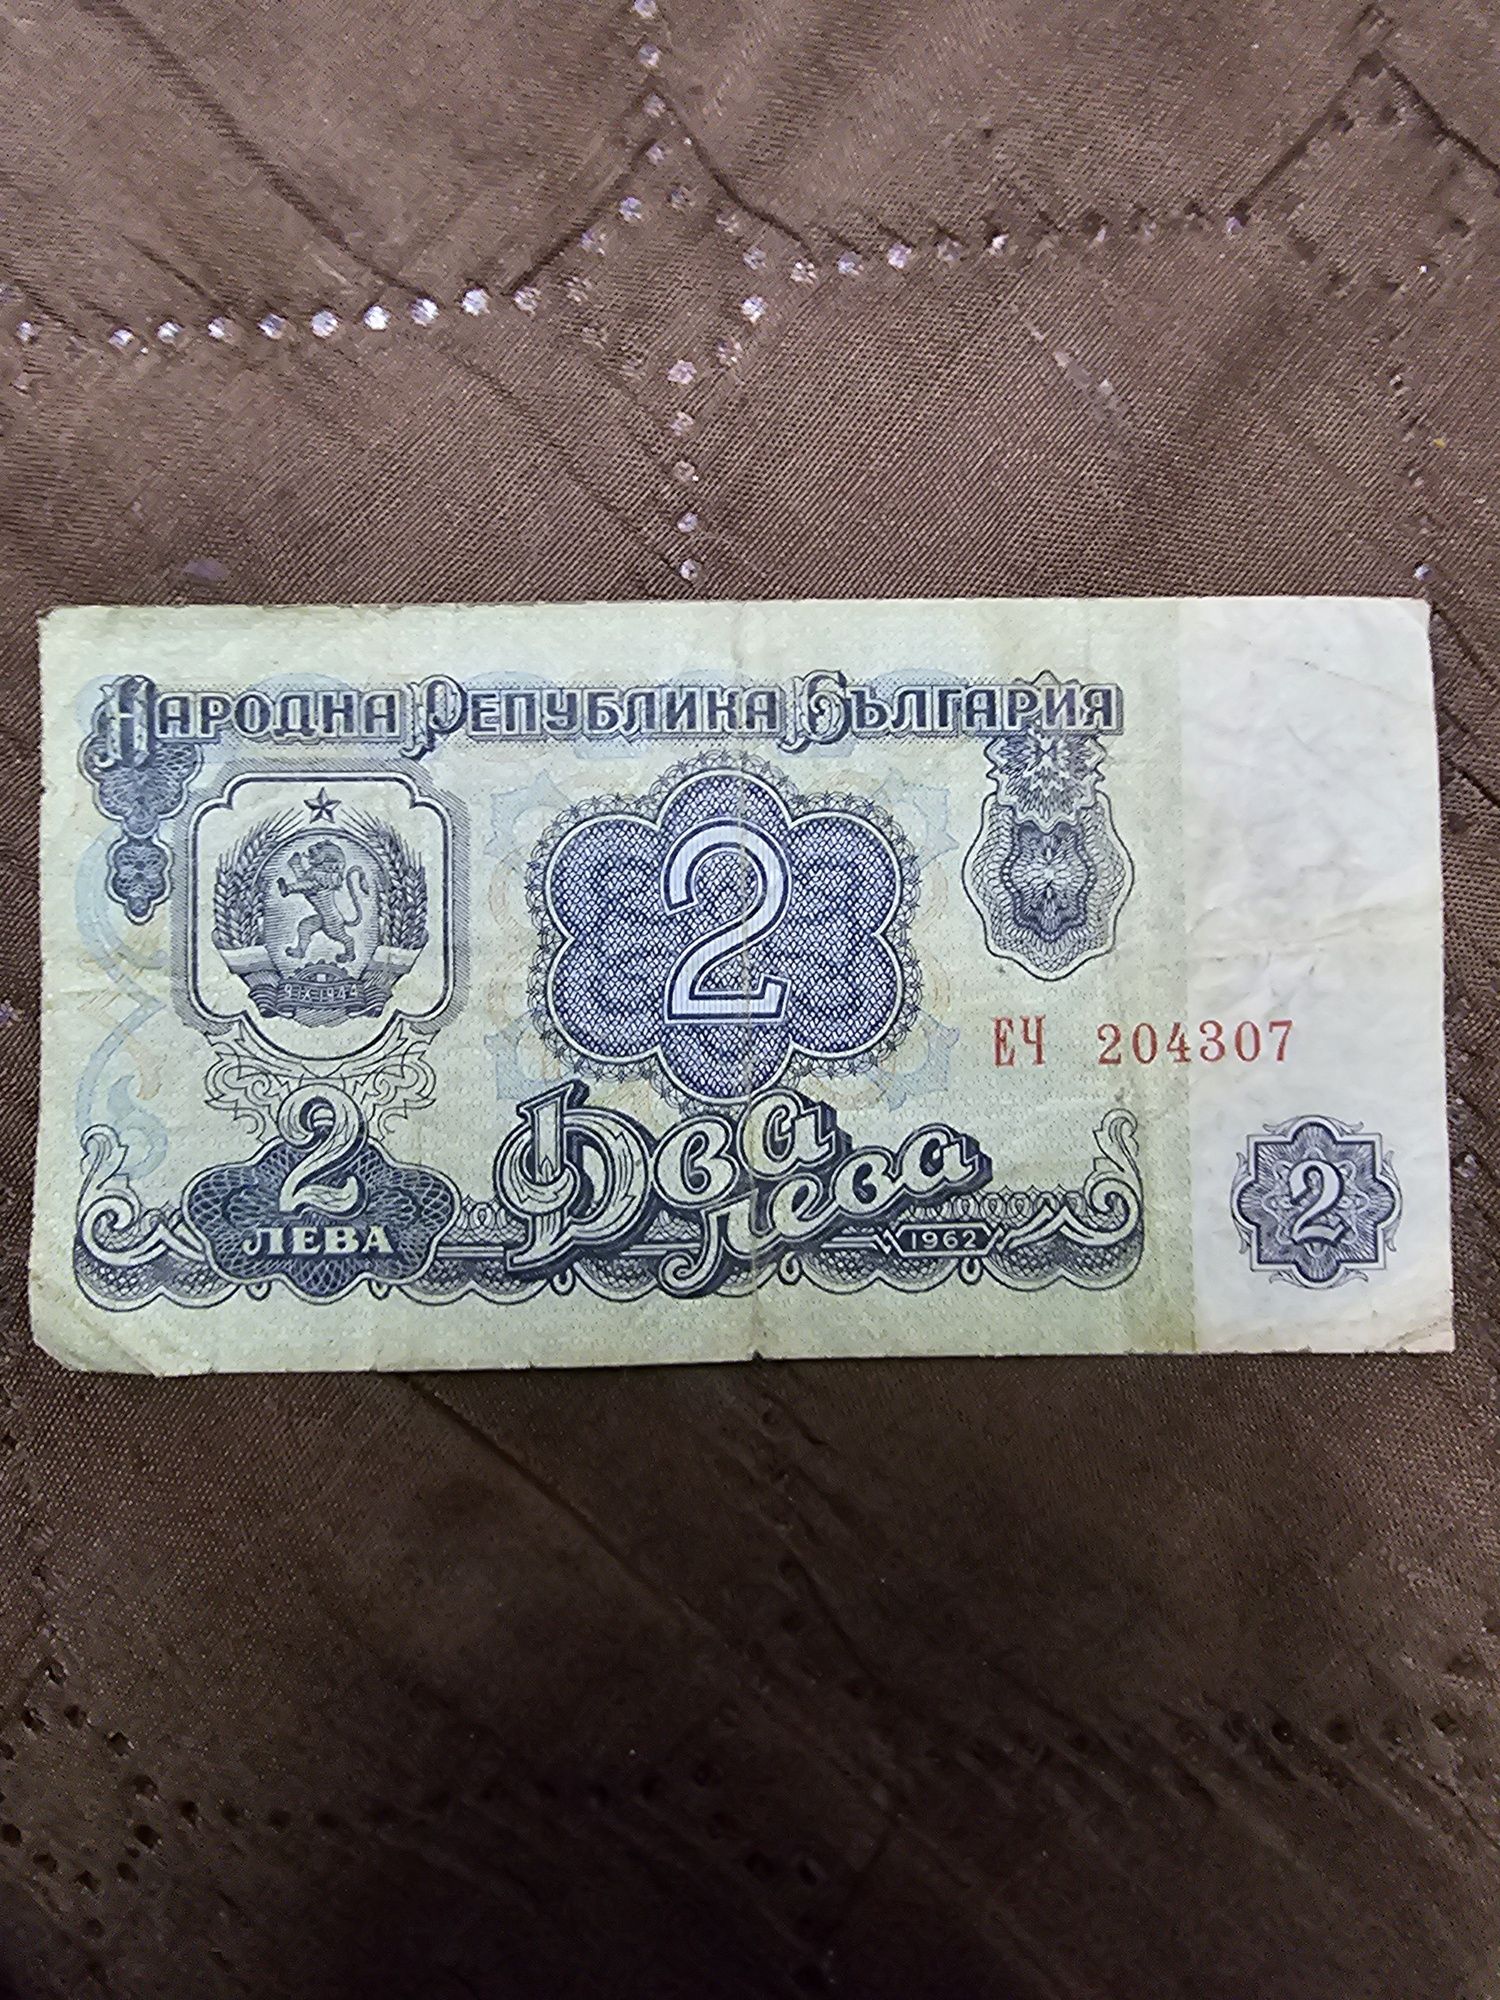 Банкнота 2 лева от 1962